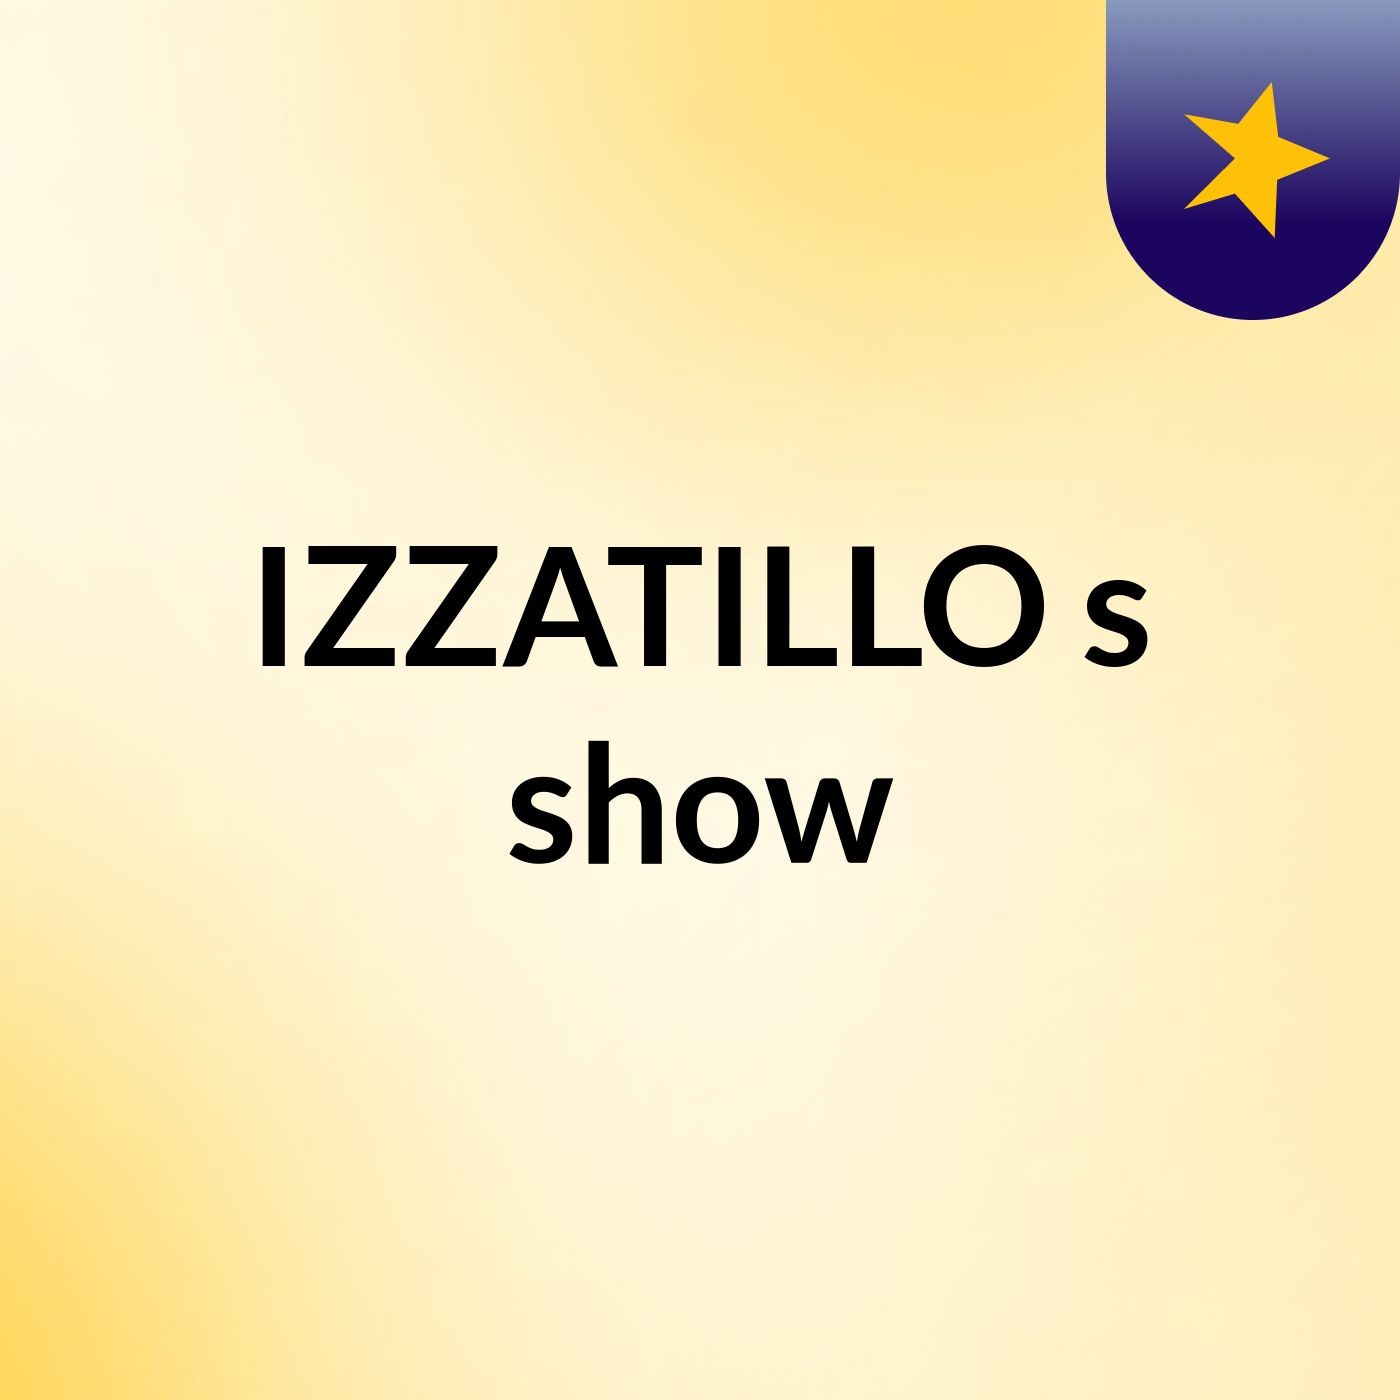 IZZATILLO's show